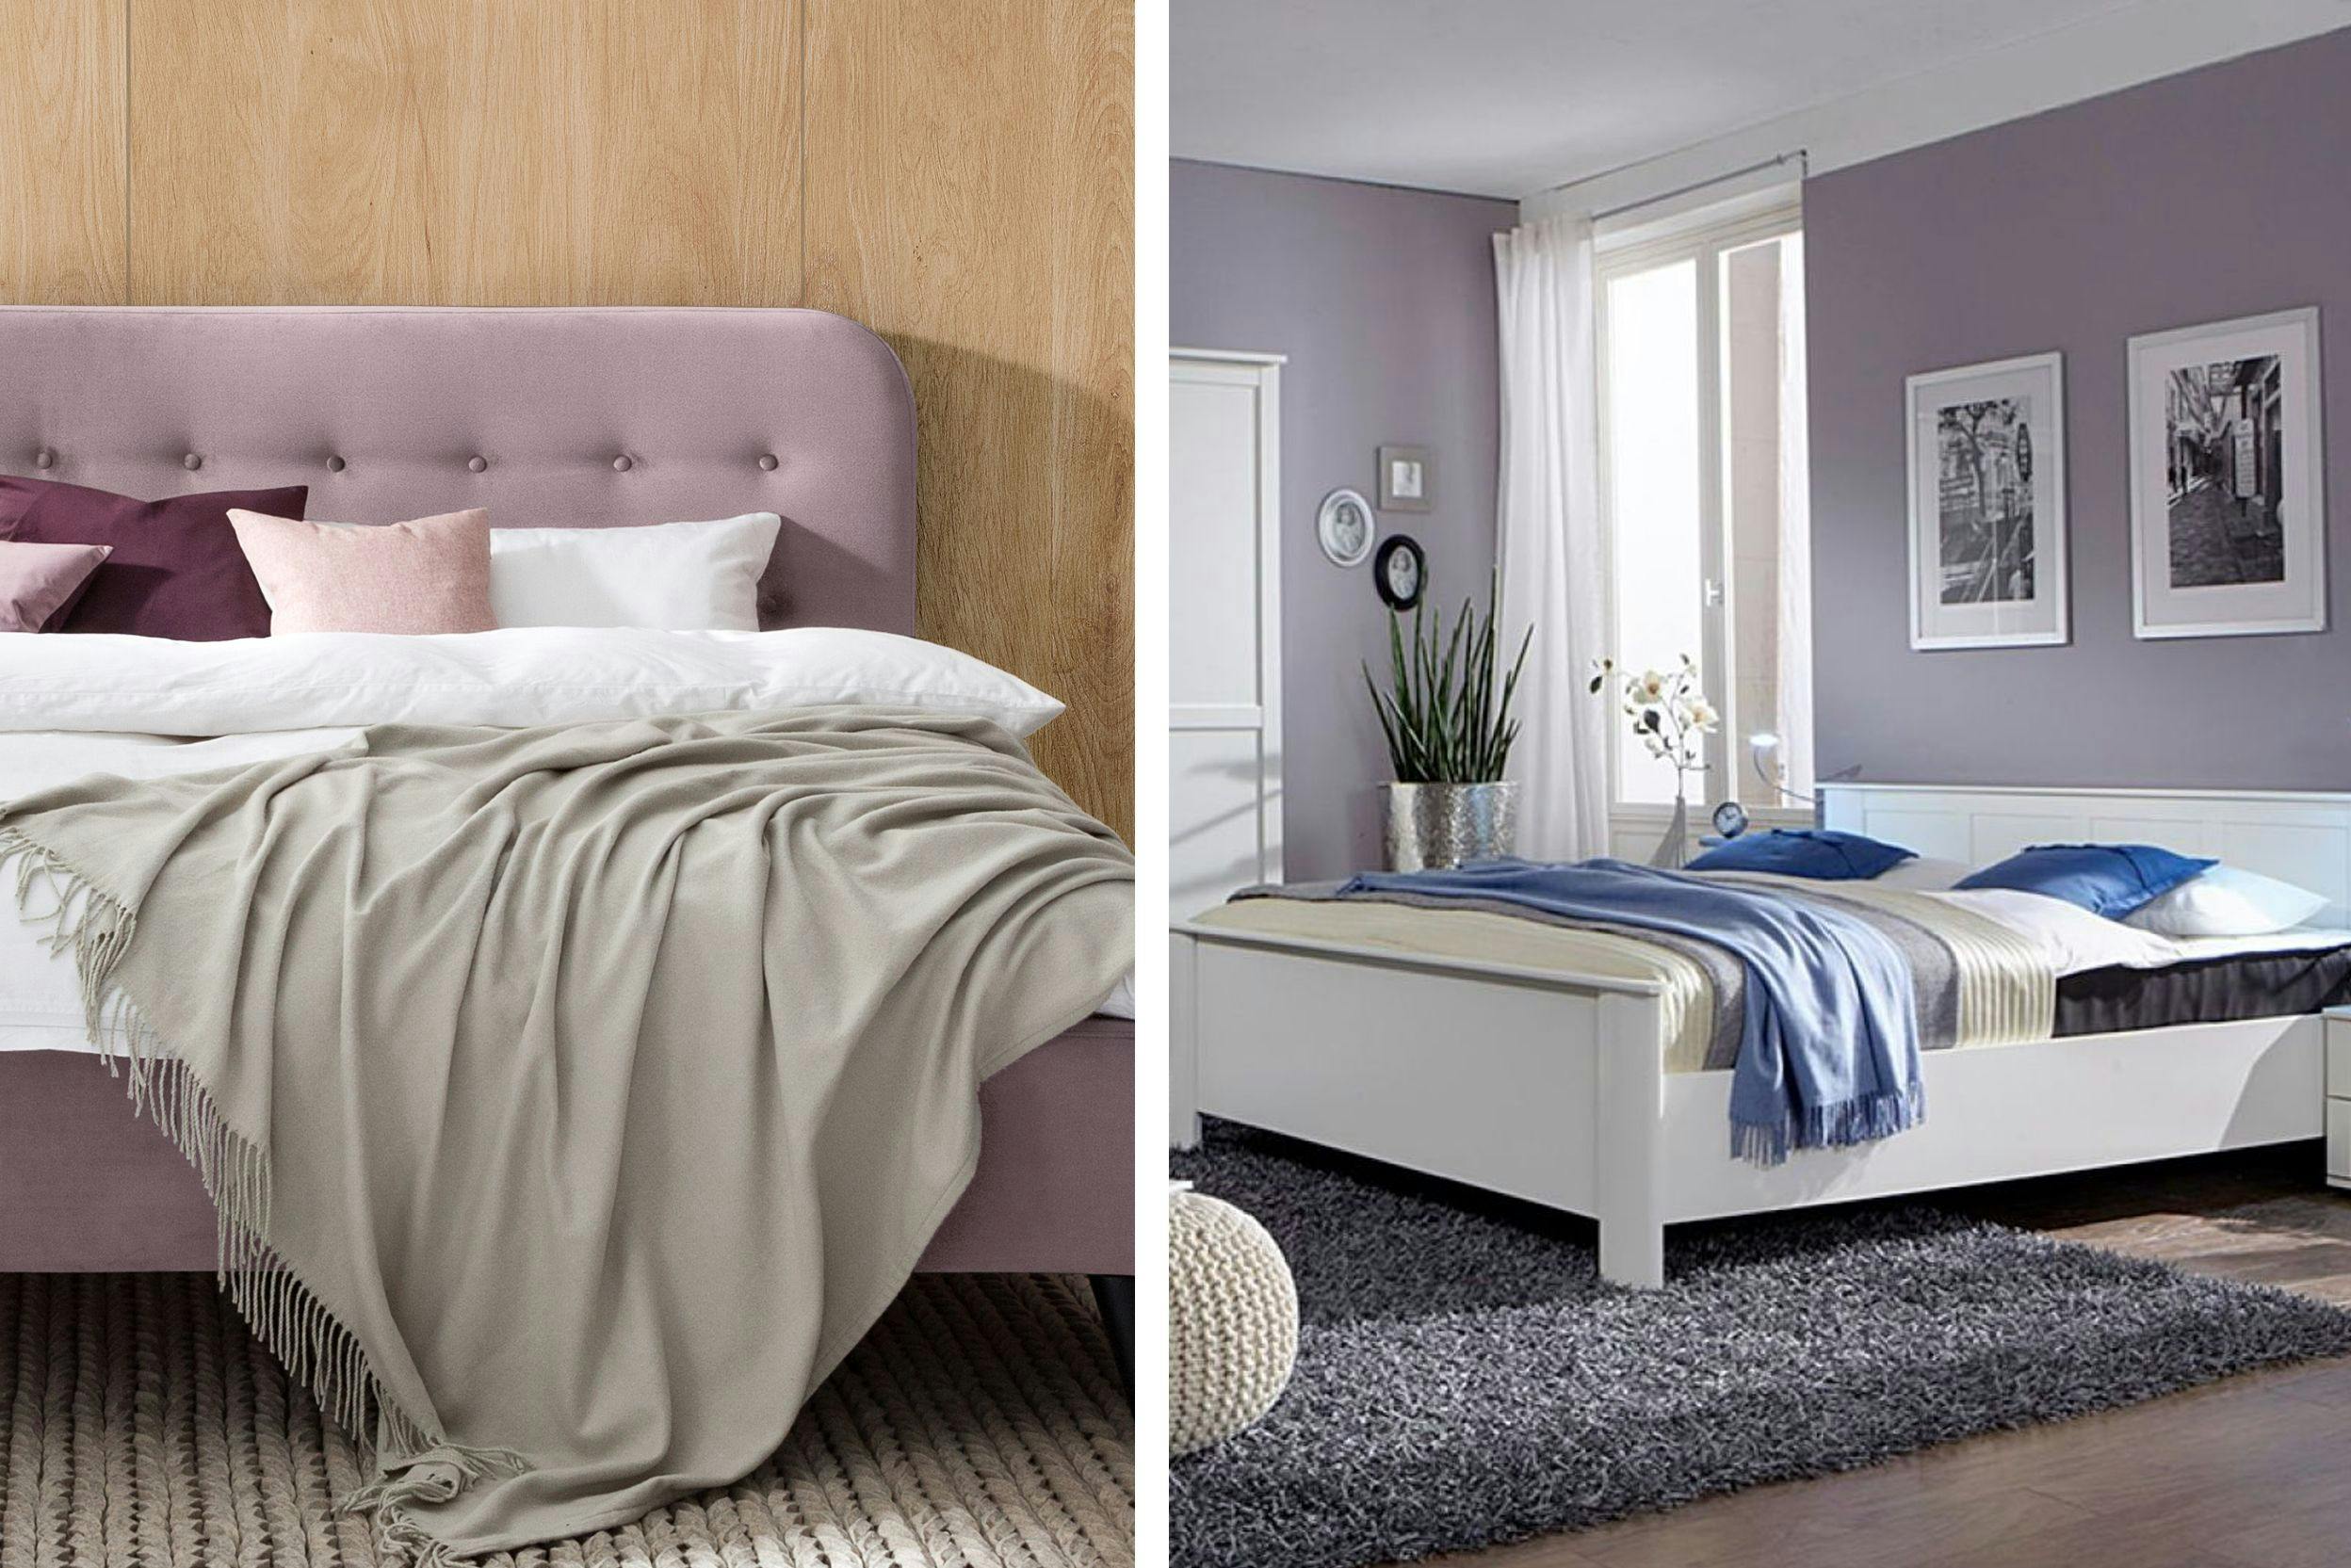 Combo de deux photos de chambres a coucher dont les couleurs sont variations de mauve clair